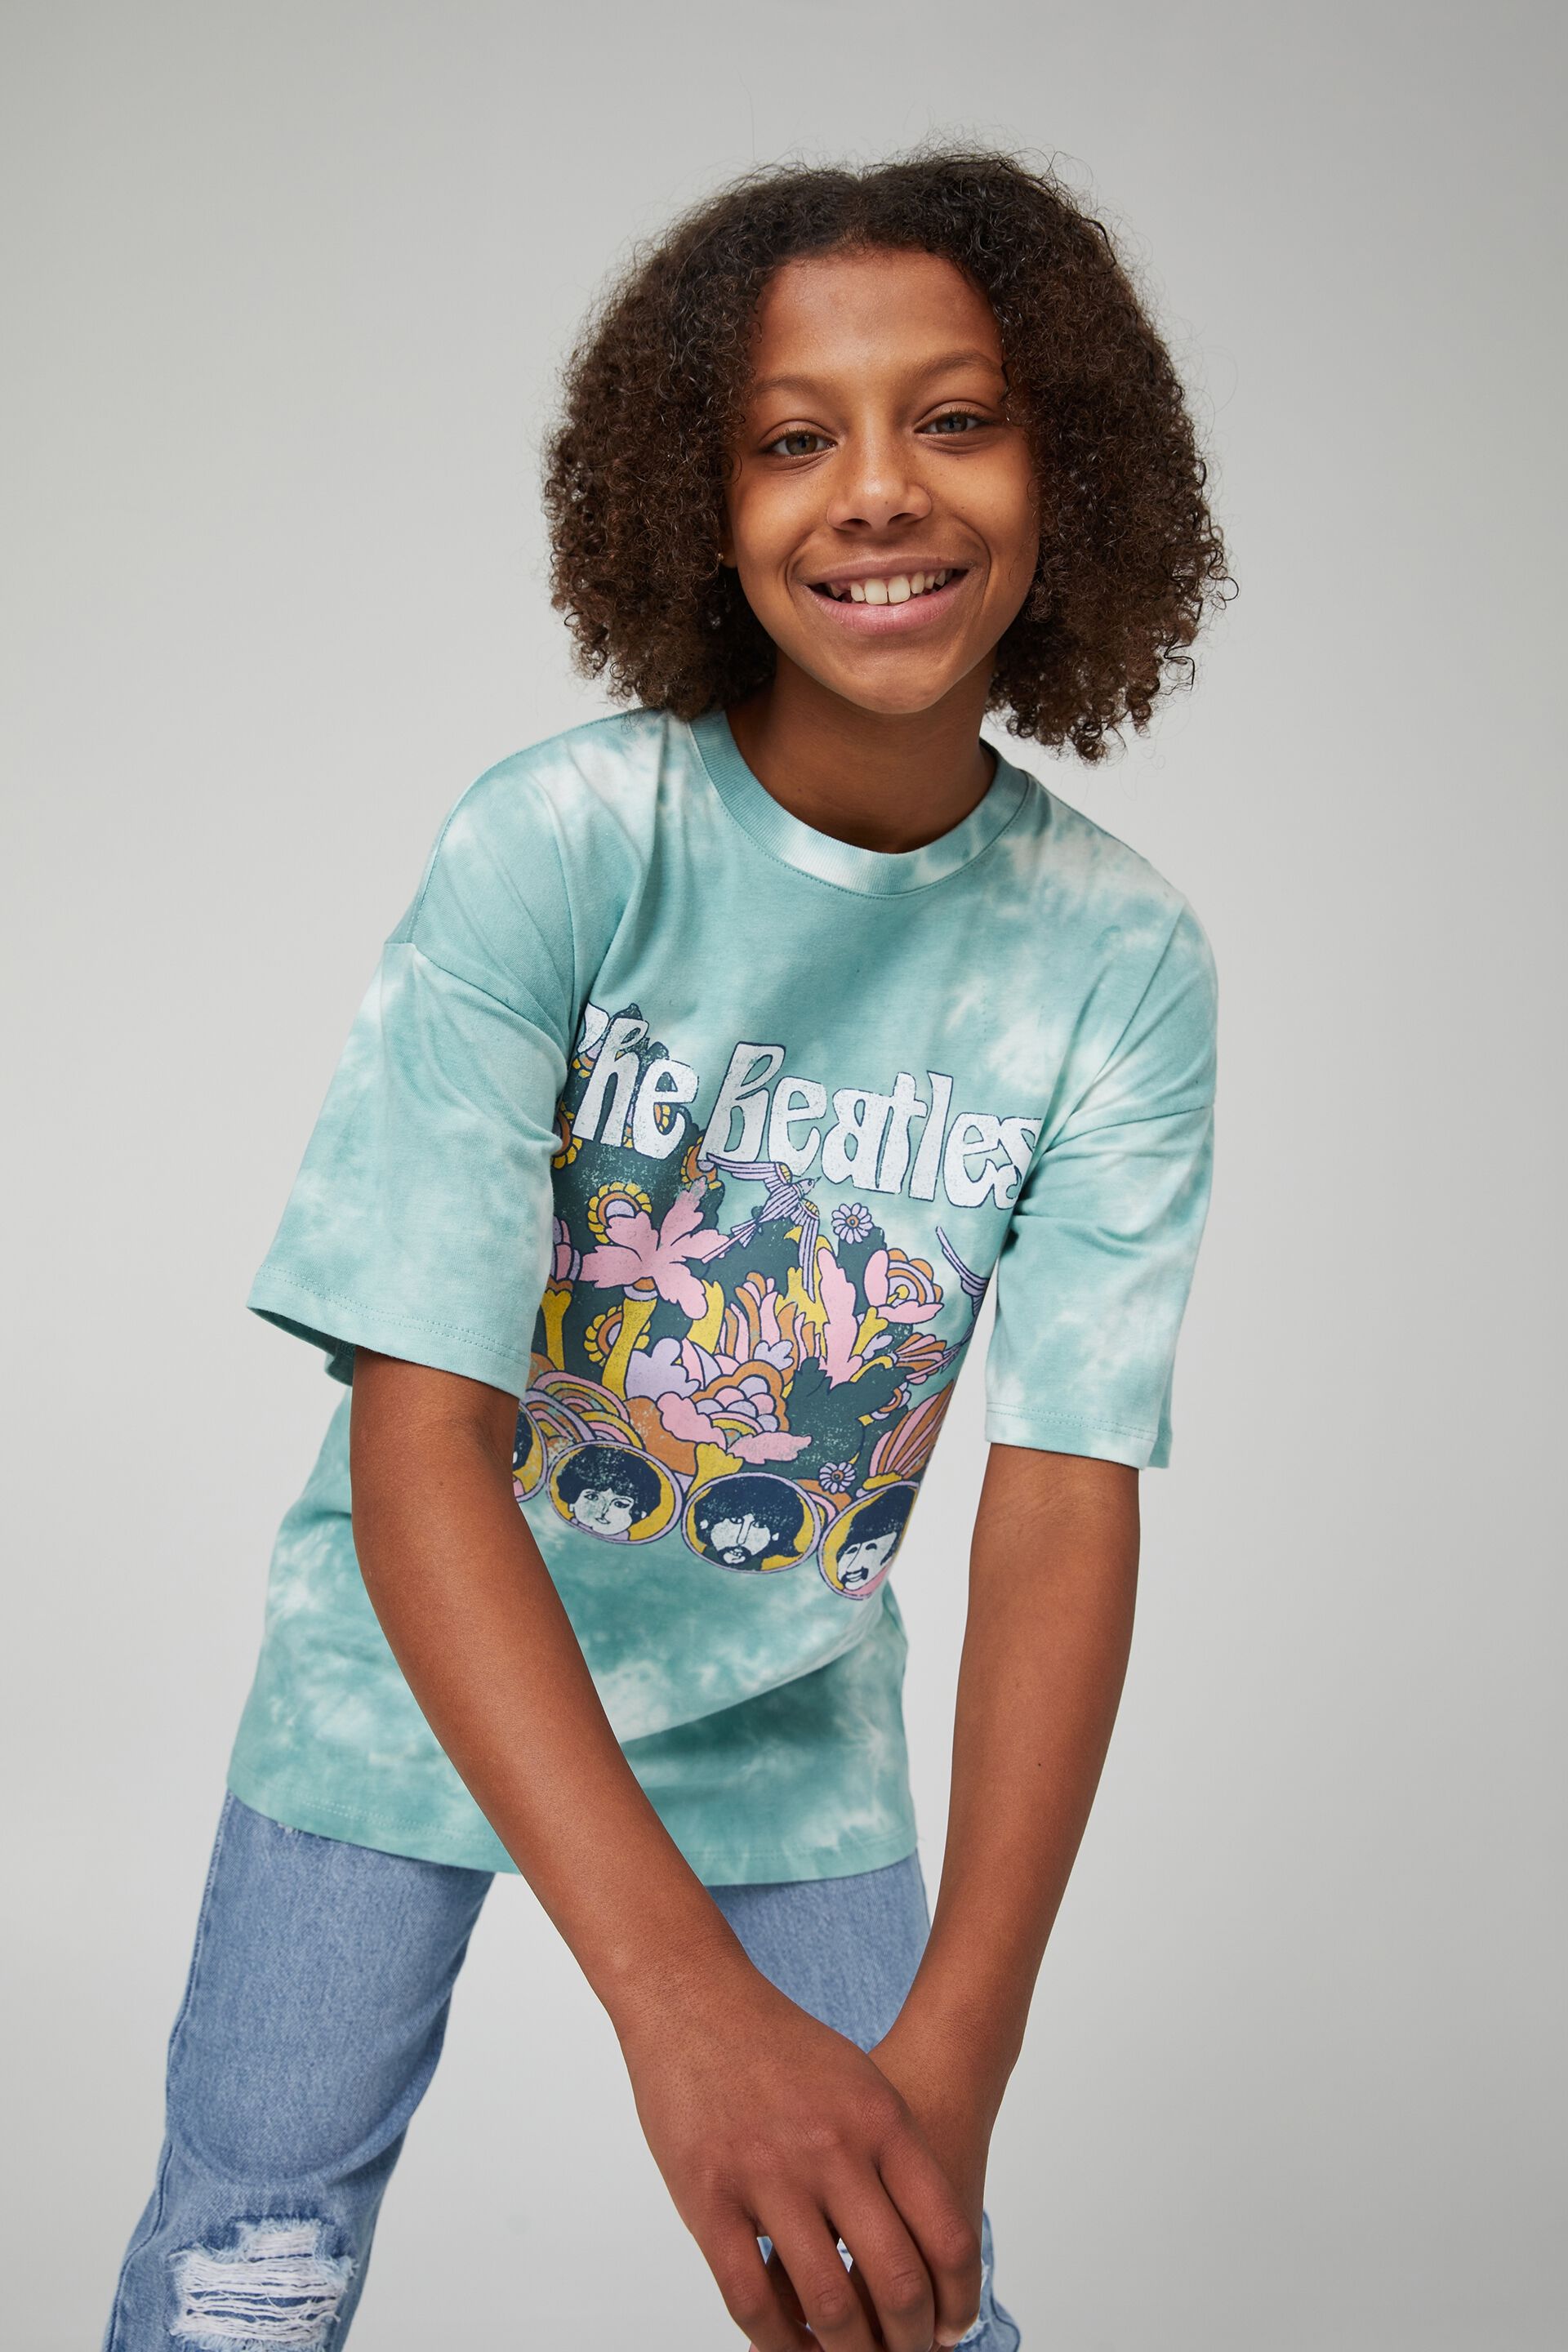 JollyRascals Girls T-Shirt Summer Top Kids New Cotton Rich Short Sleeve Tee Age 7-13 Years 